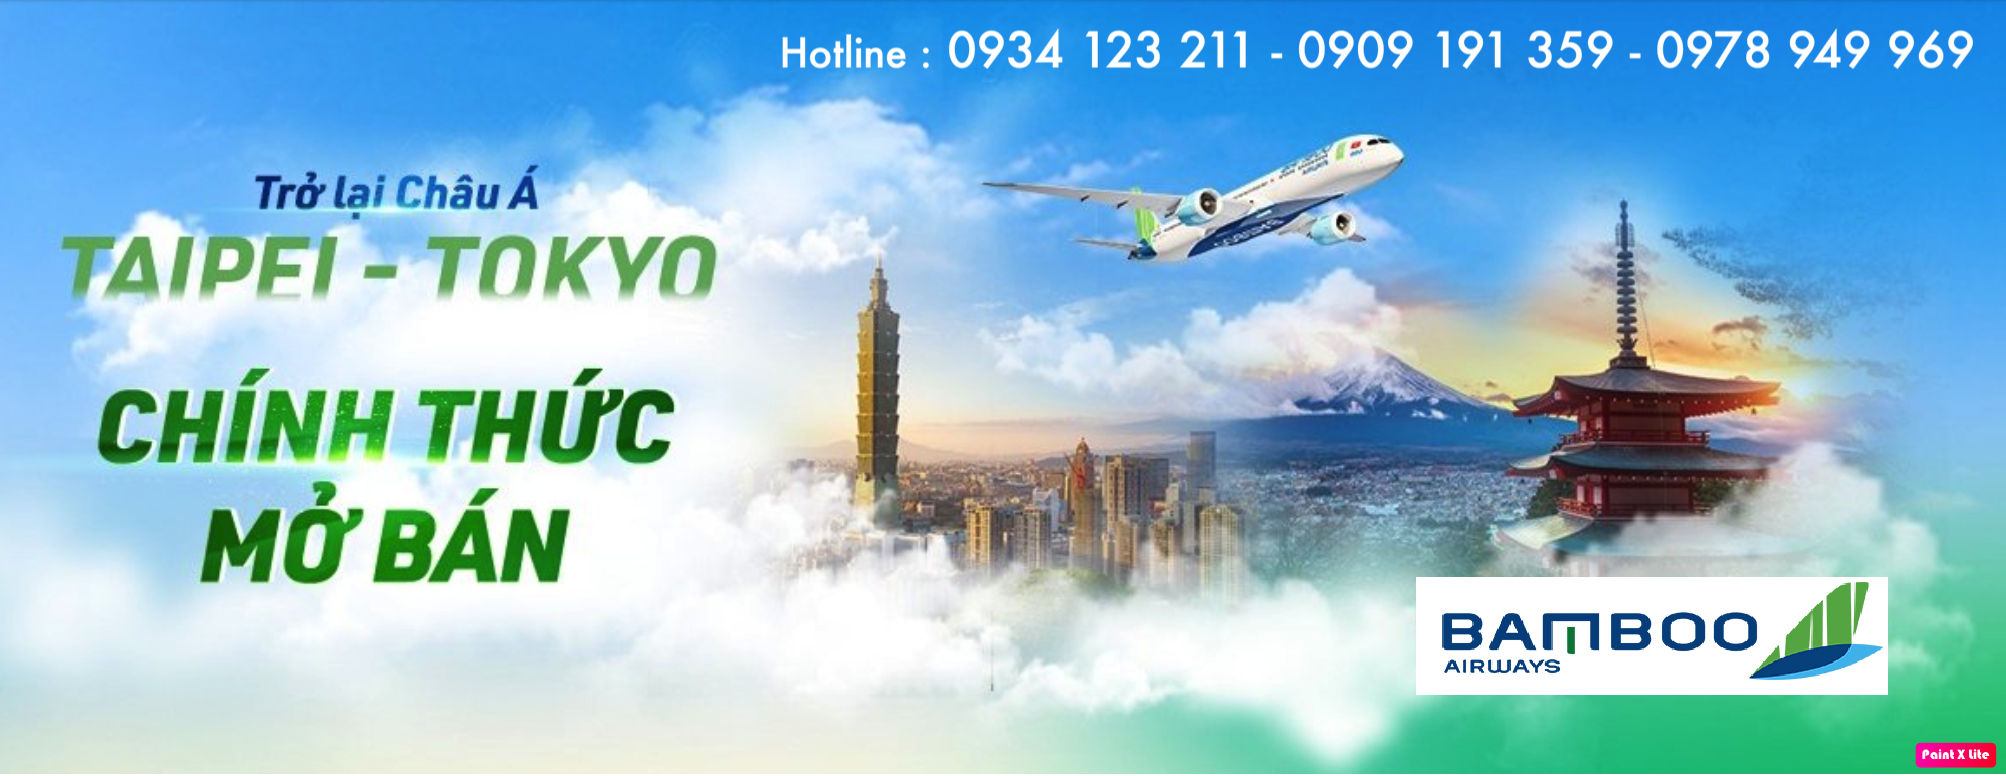  Bamboo Airways Chính thức mở bán vé bay thẳng Đài Bắc (Taipei), Tokyo